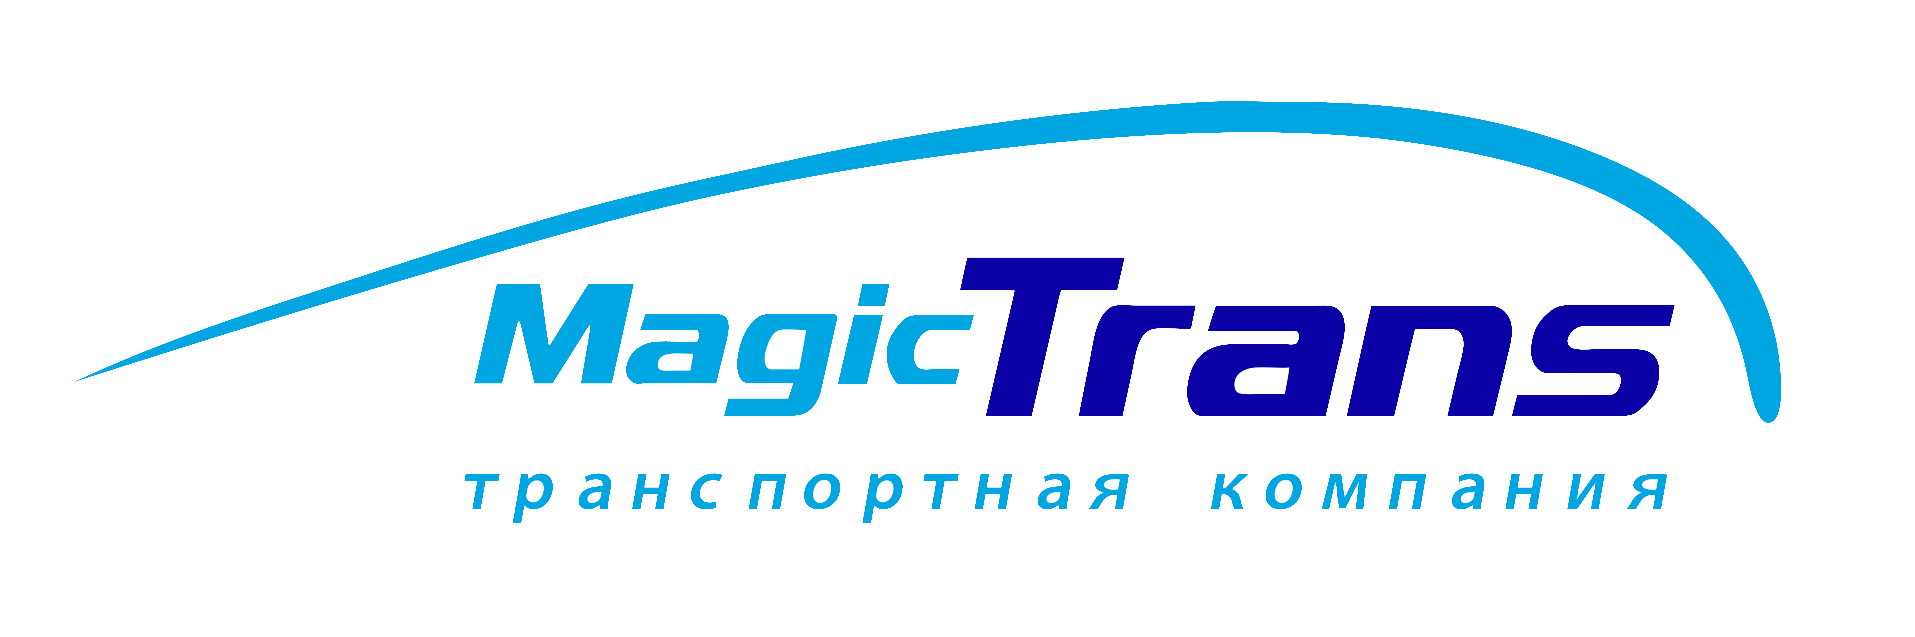 Компания magic trans. Компания Мейджик транс. Magic Trans логотип. Эмблема транспортной компании. ТК «Мейджик транс» лого.